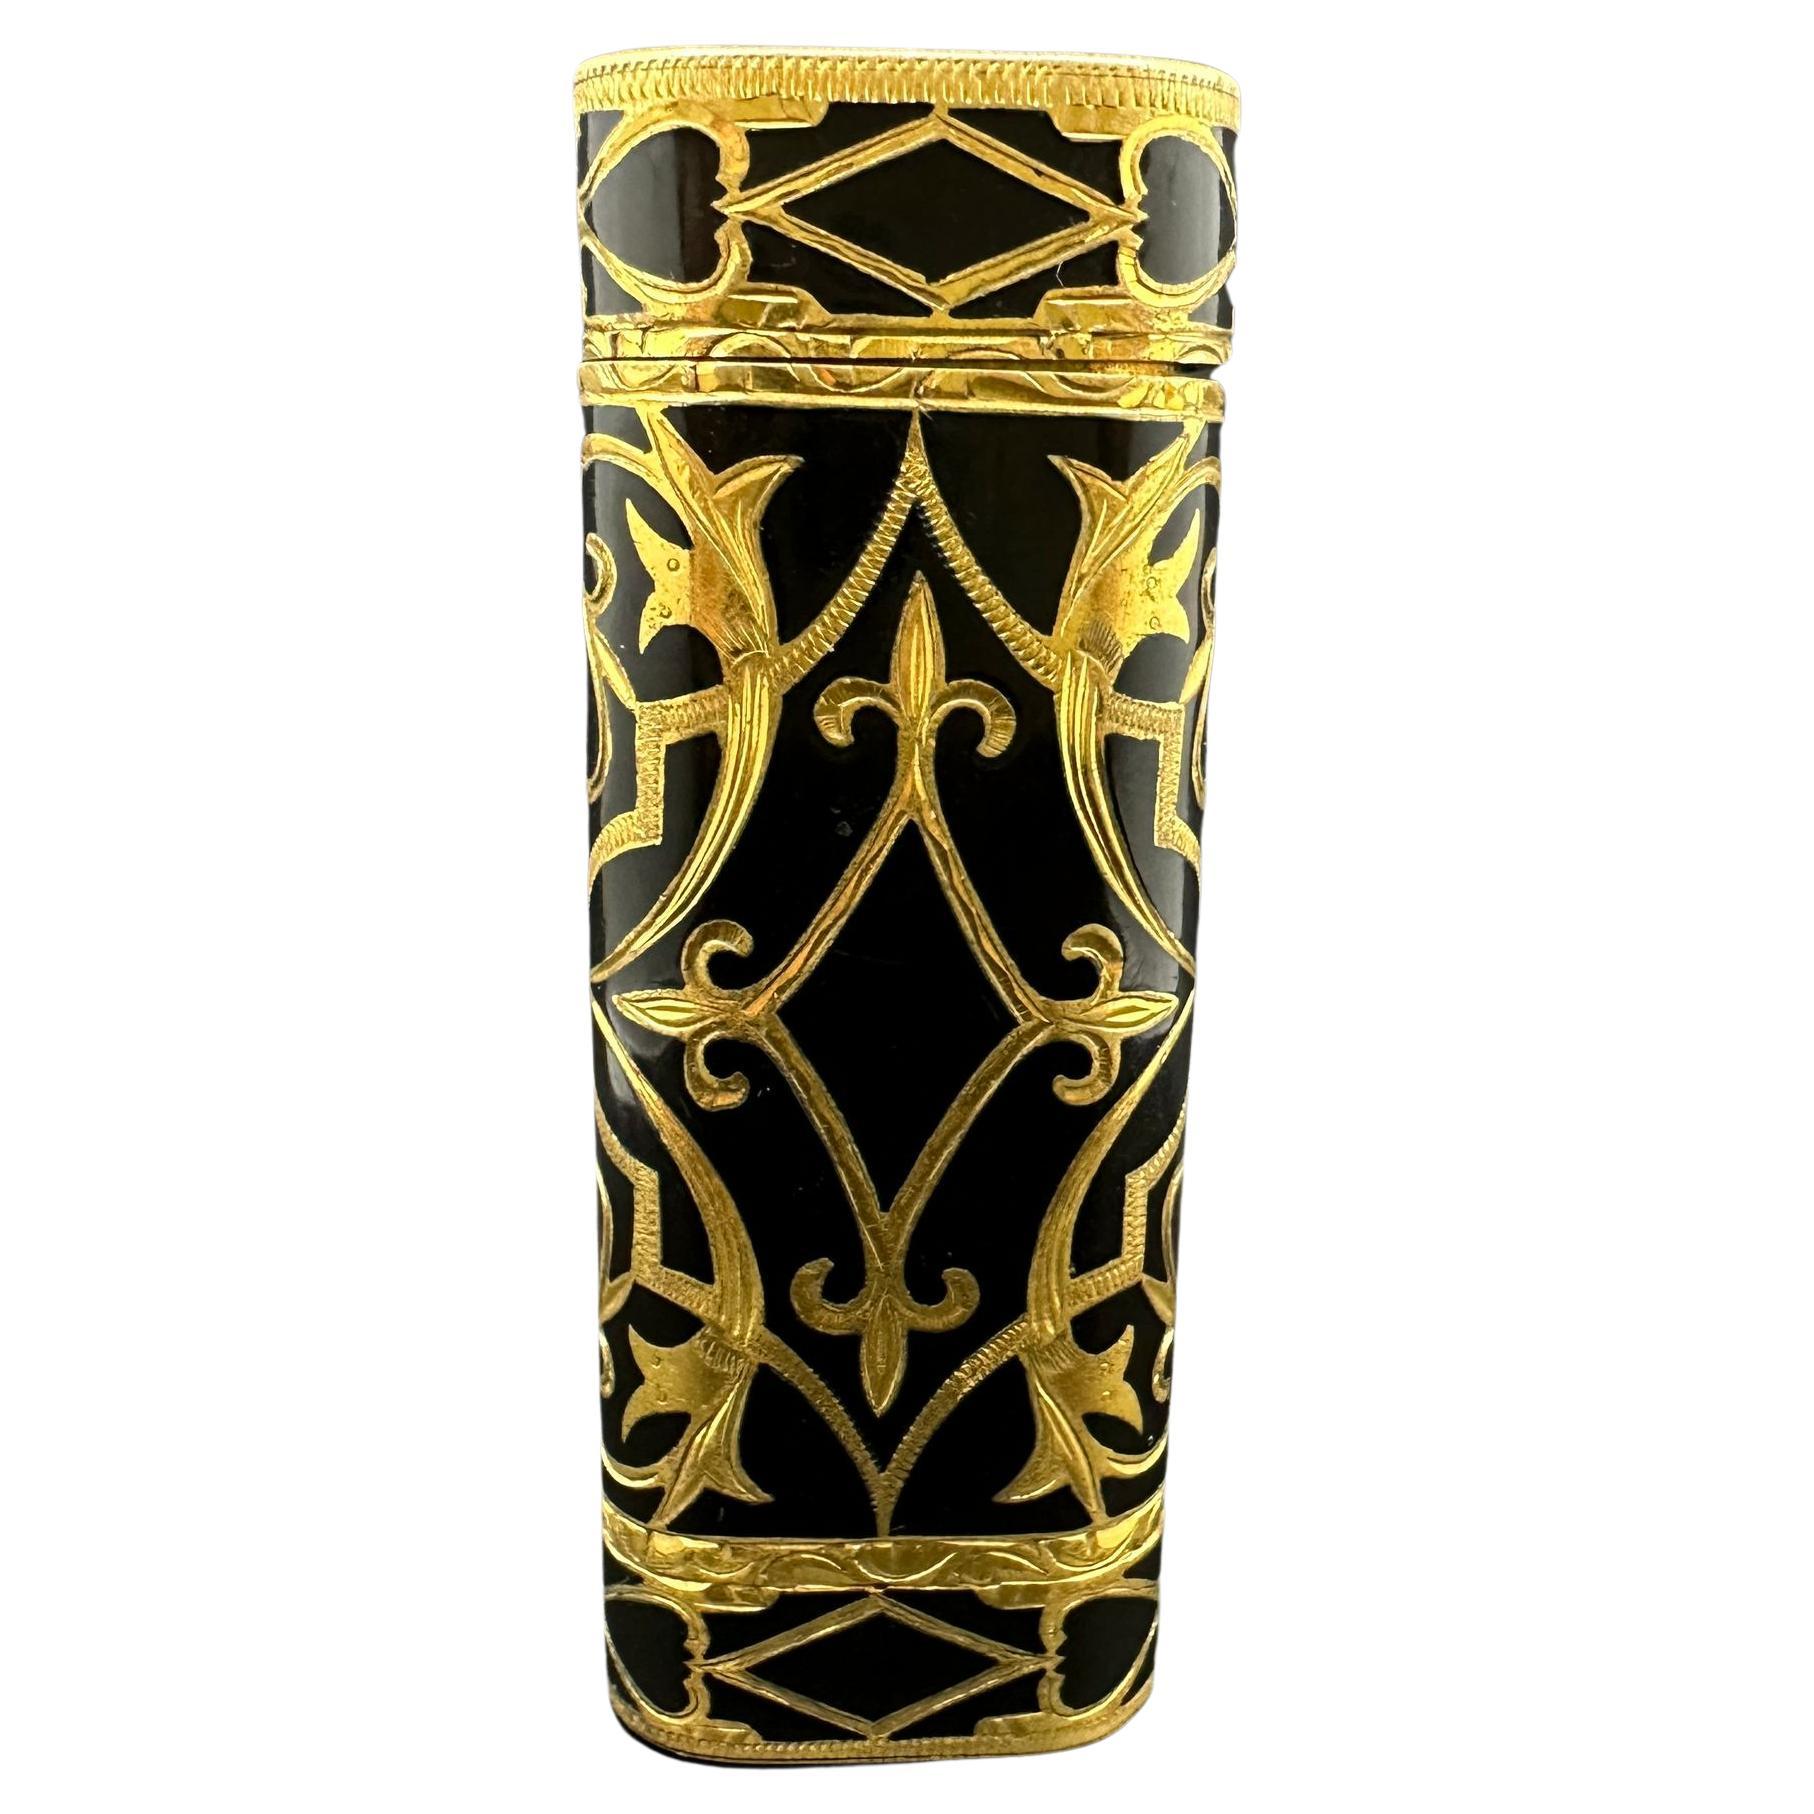 Rare Baroque Cartier “Royking” 18k Gold Inlay & Black Lacquer